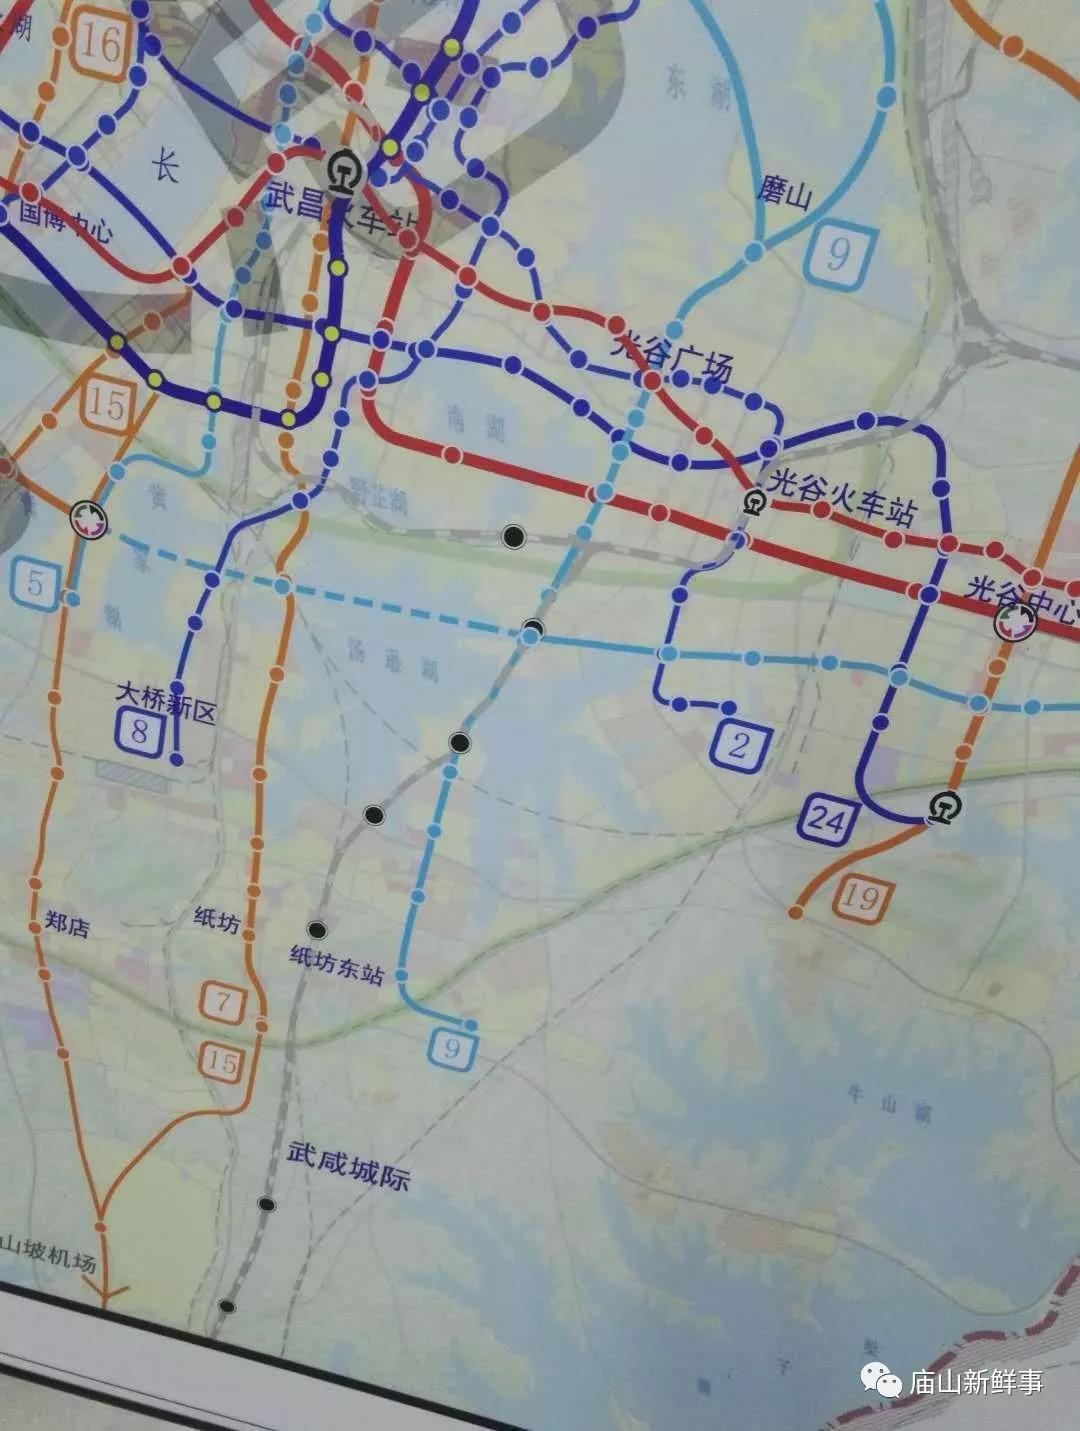 现场公示了武汉市轨道交通线网修编(2018